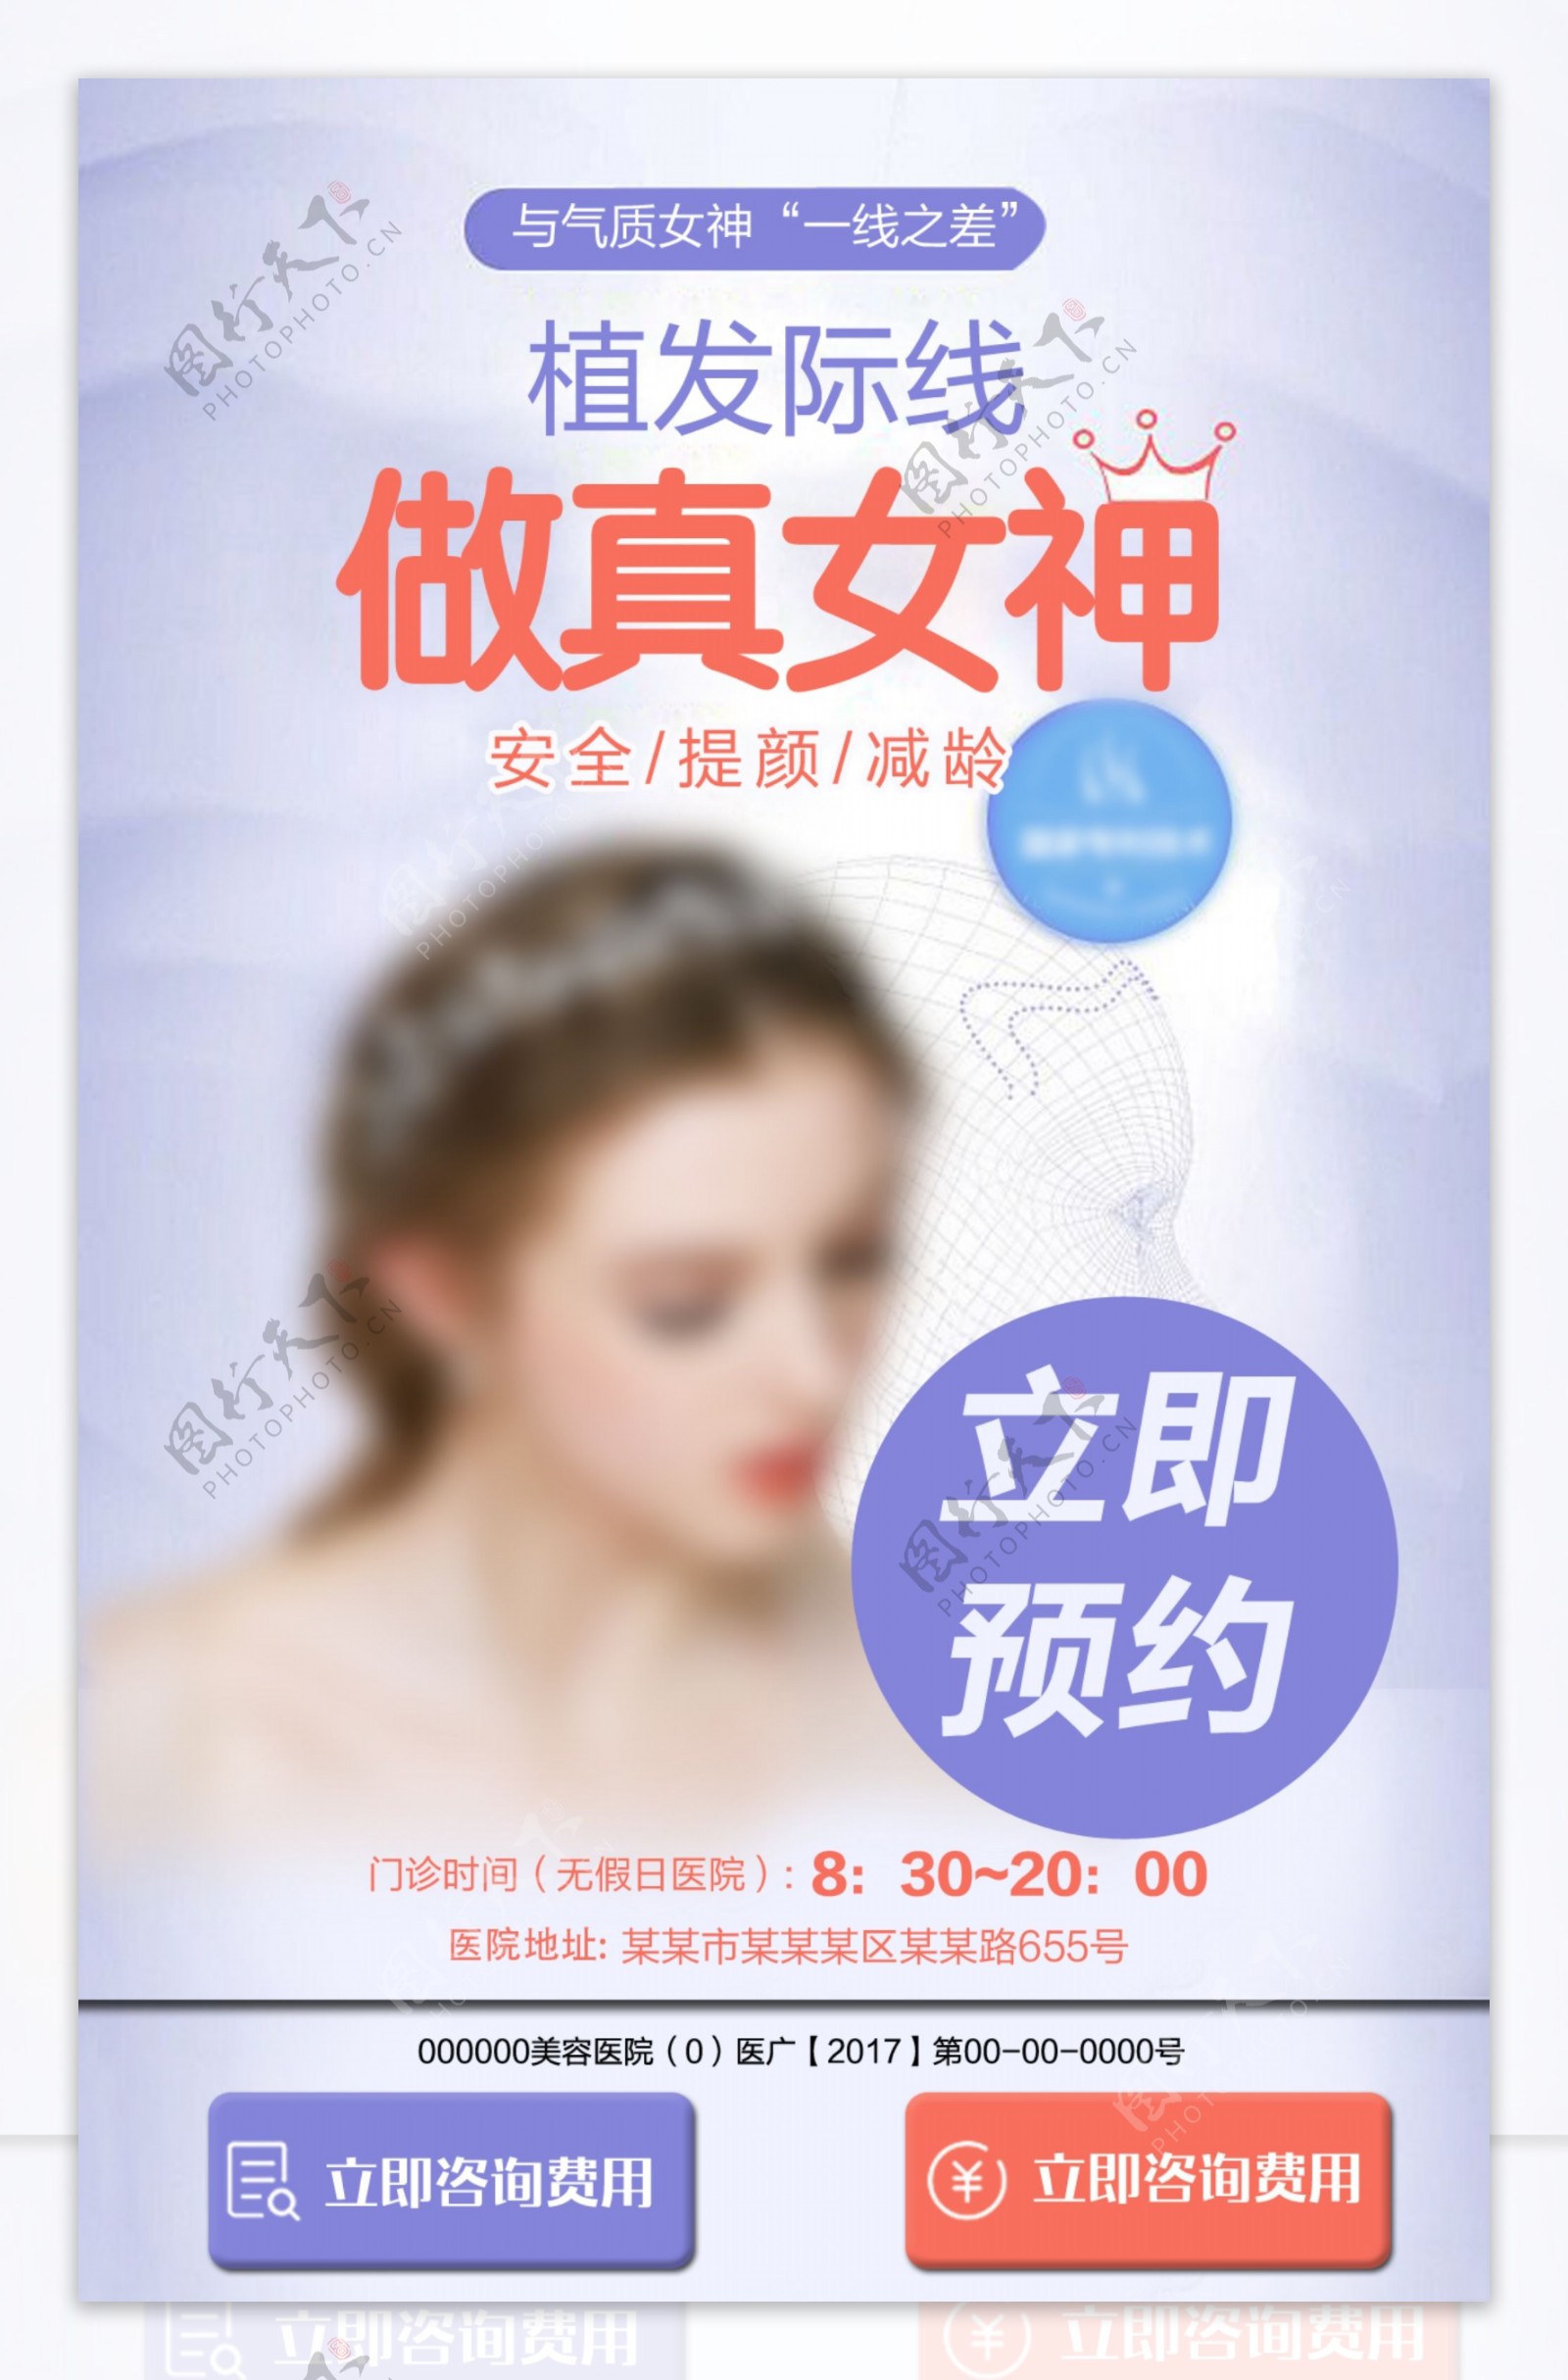 医疗美容行业活动宣传海报